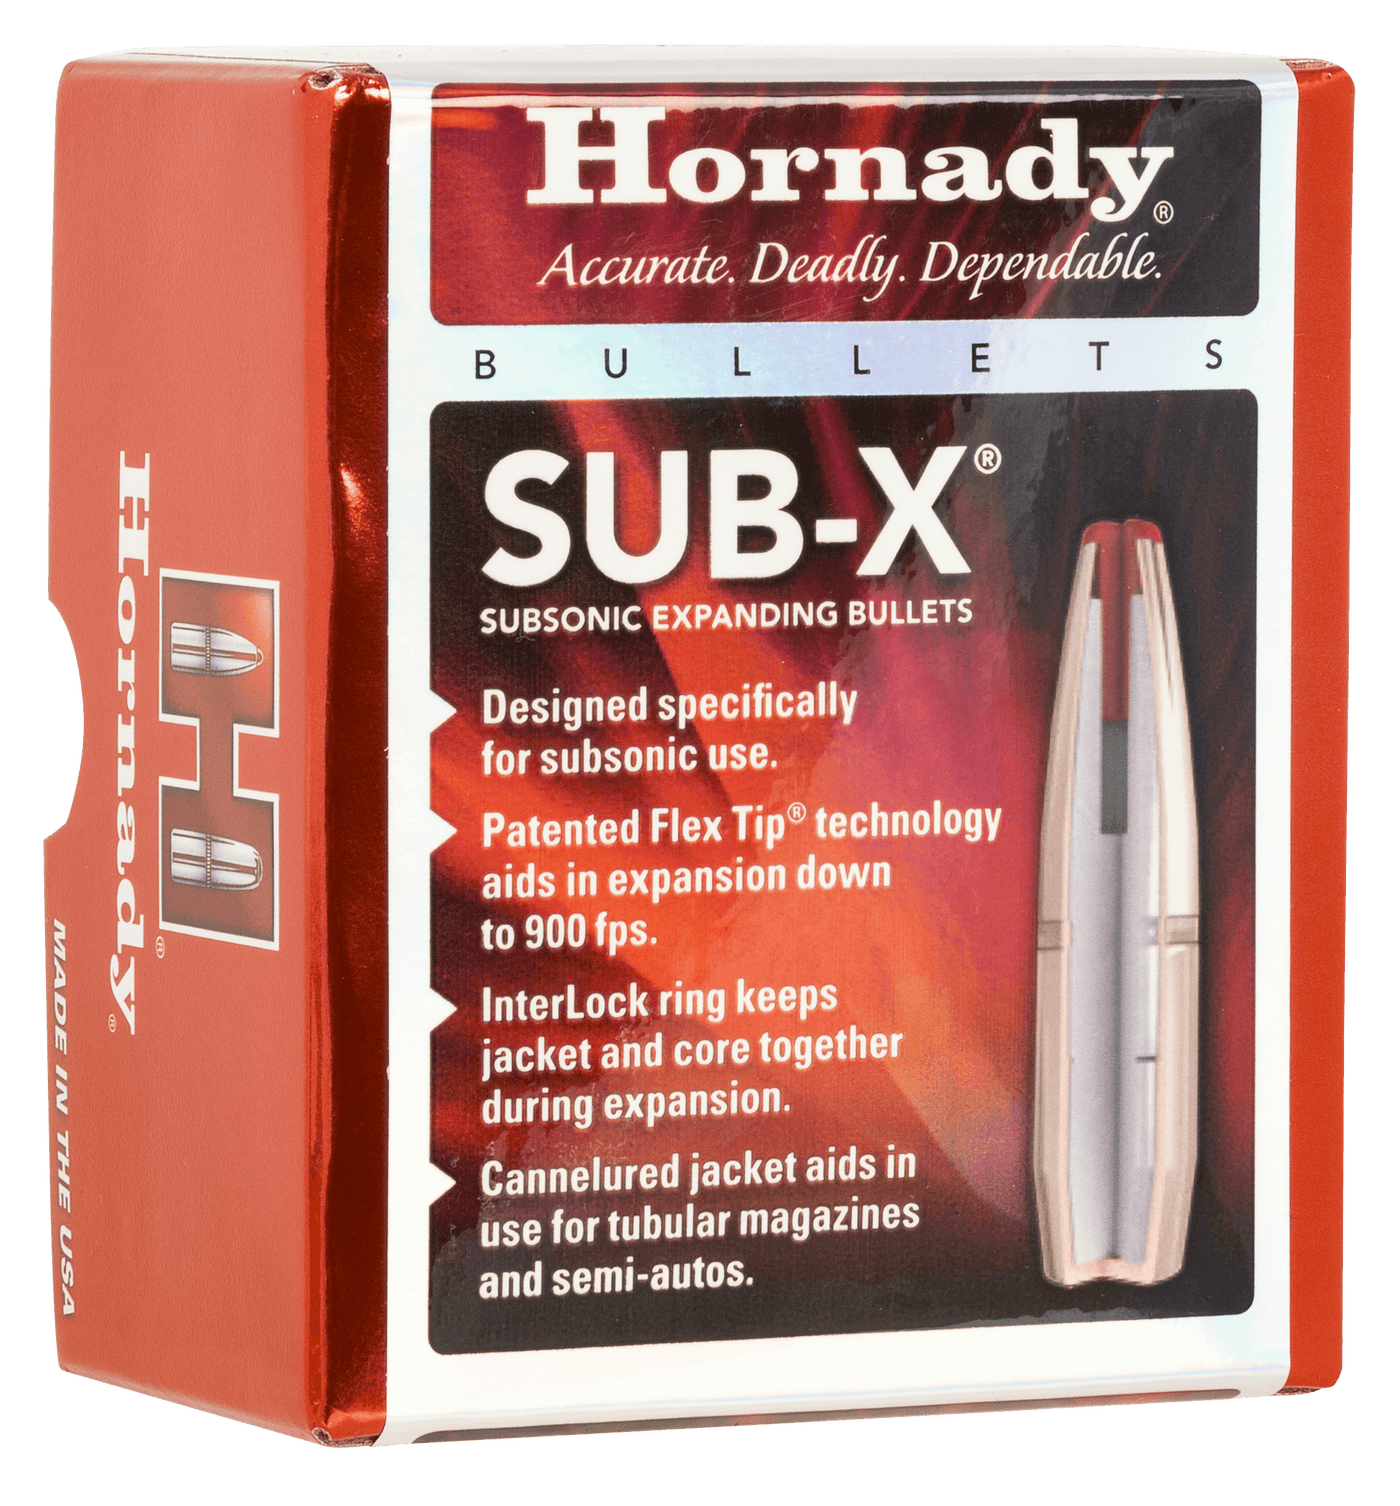 Hornady Sub-x, Horn 3148    Bull  .3115 255 Subx           100/15